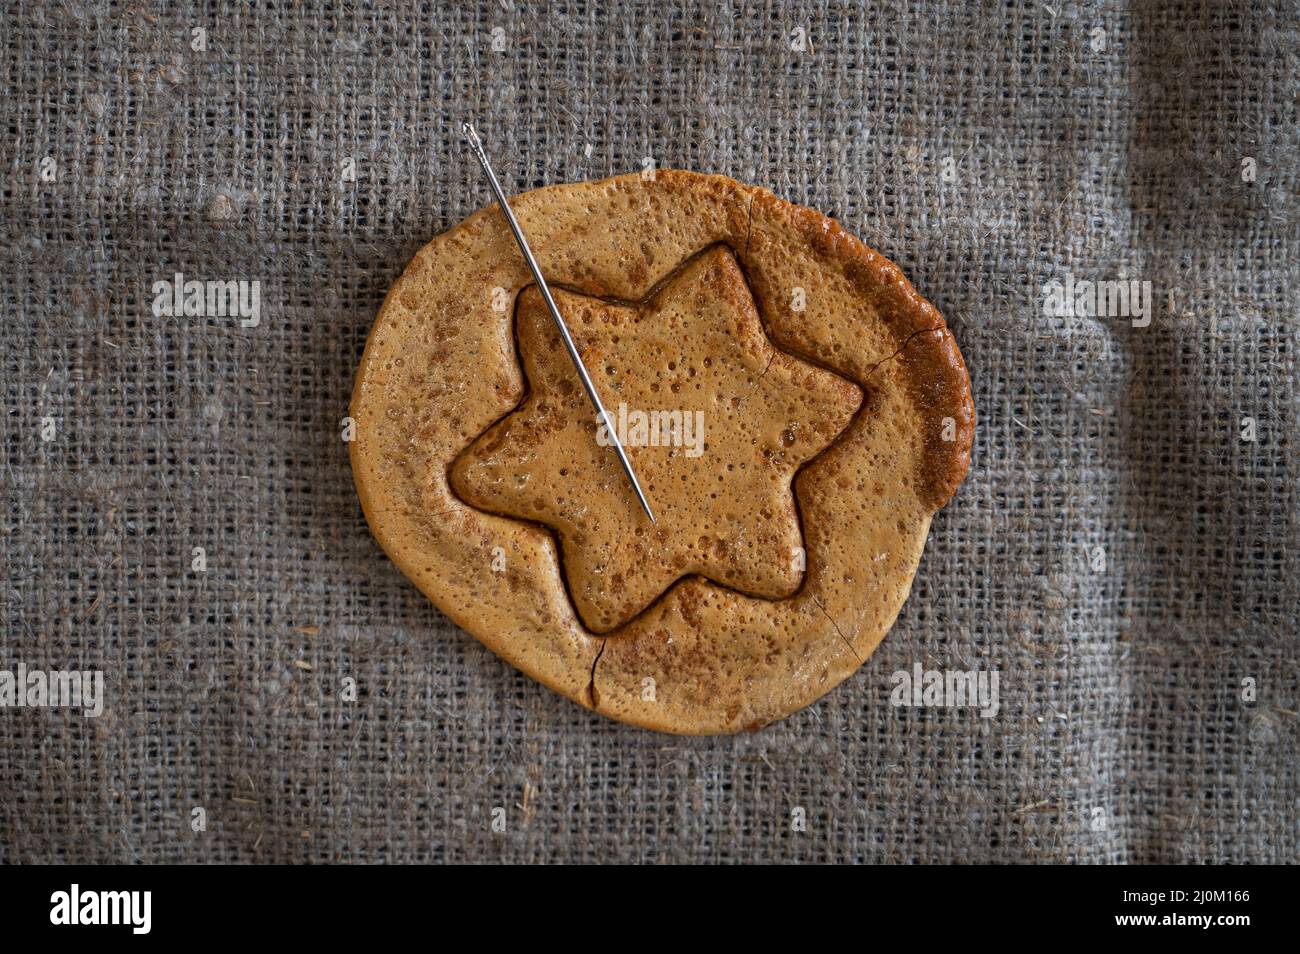 Biscuits de sucre brun caramel avec une aiguille en métal Banque D'Images